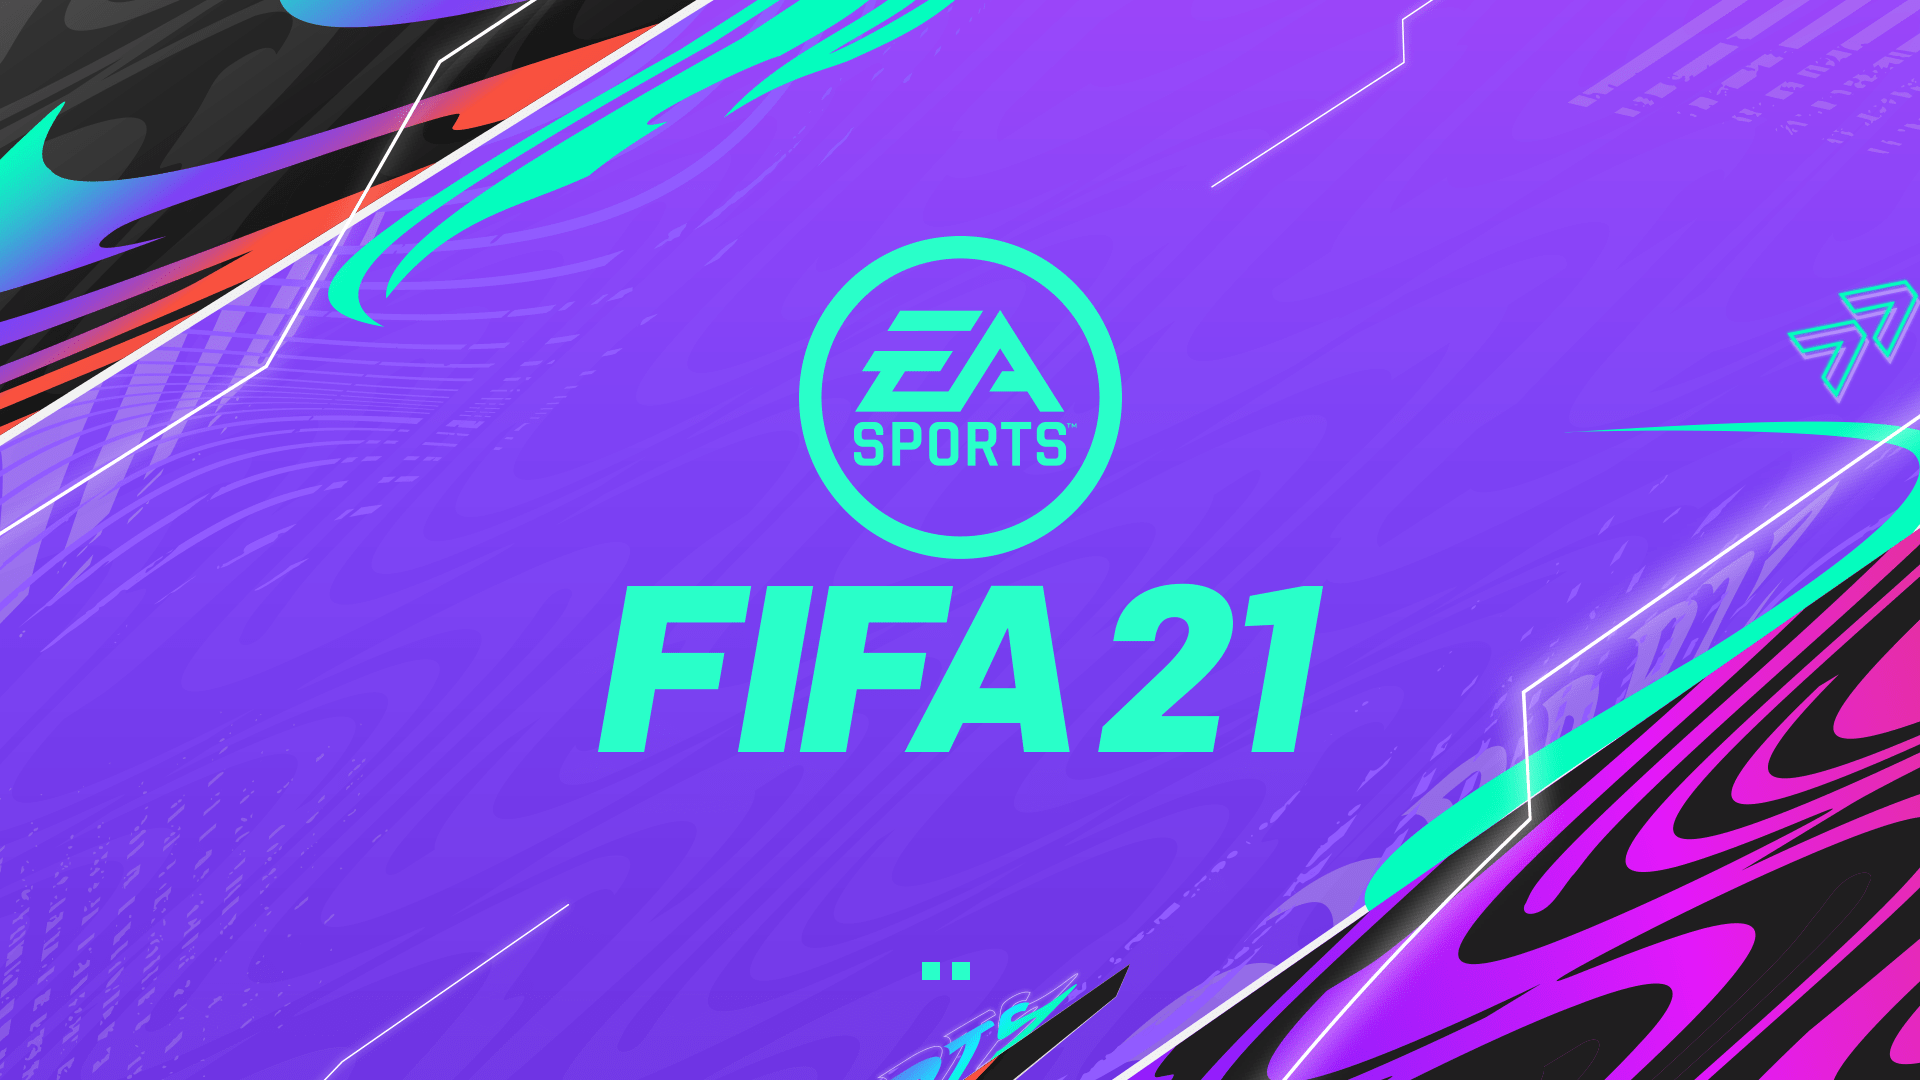 Fifa 21 (Credit: EA Sports)